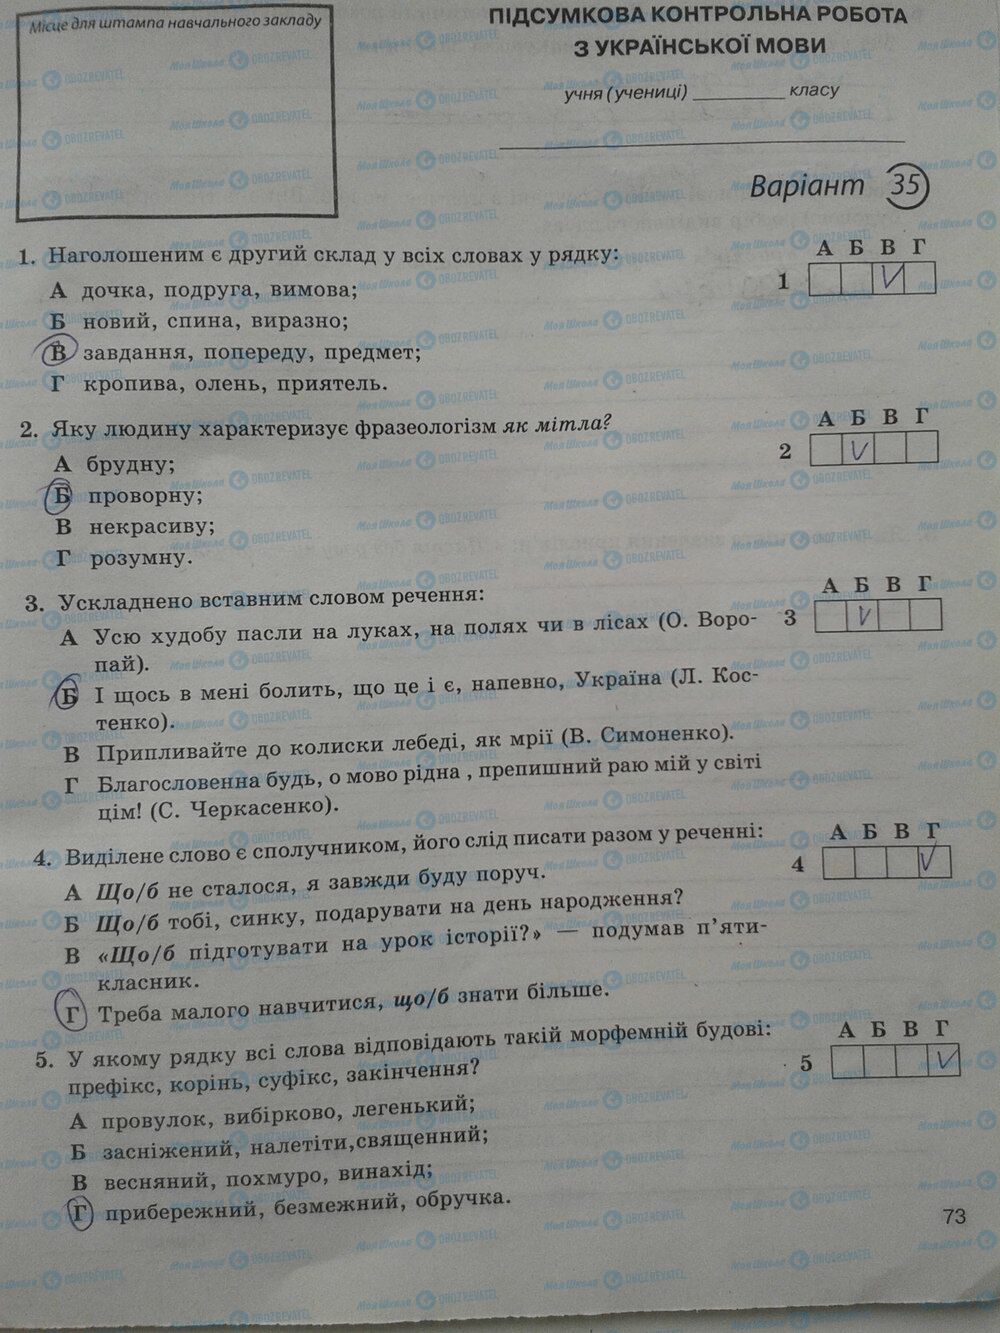 ГДЗ Укр мова 5 класс страница стр. 73